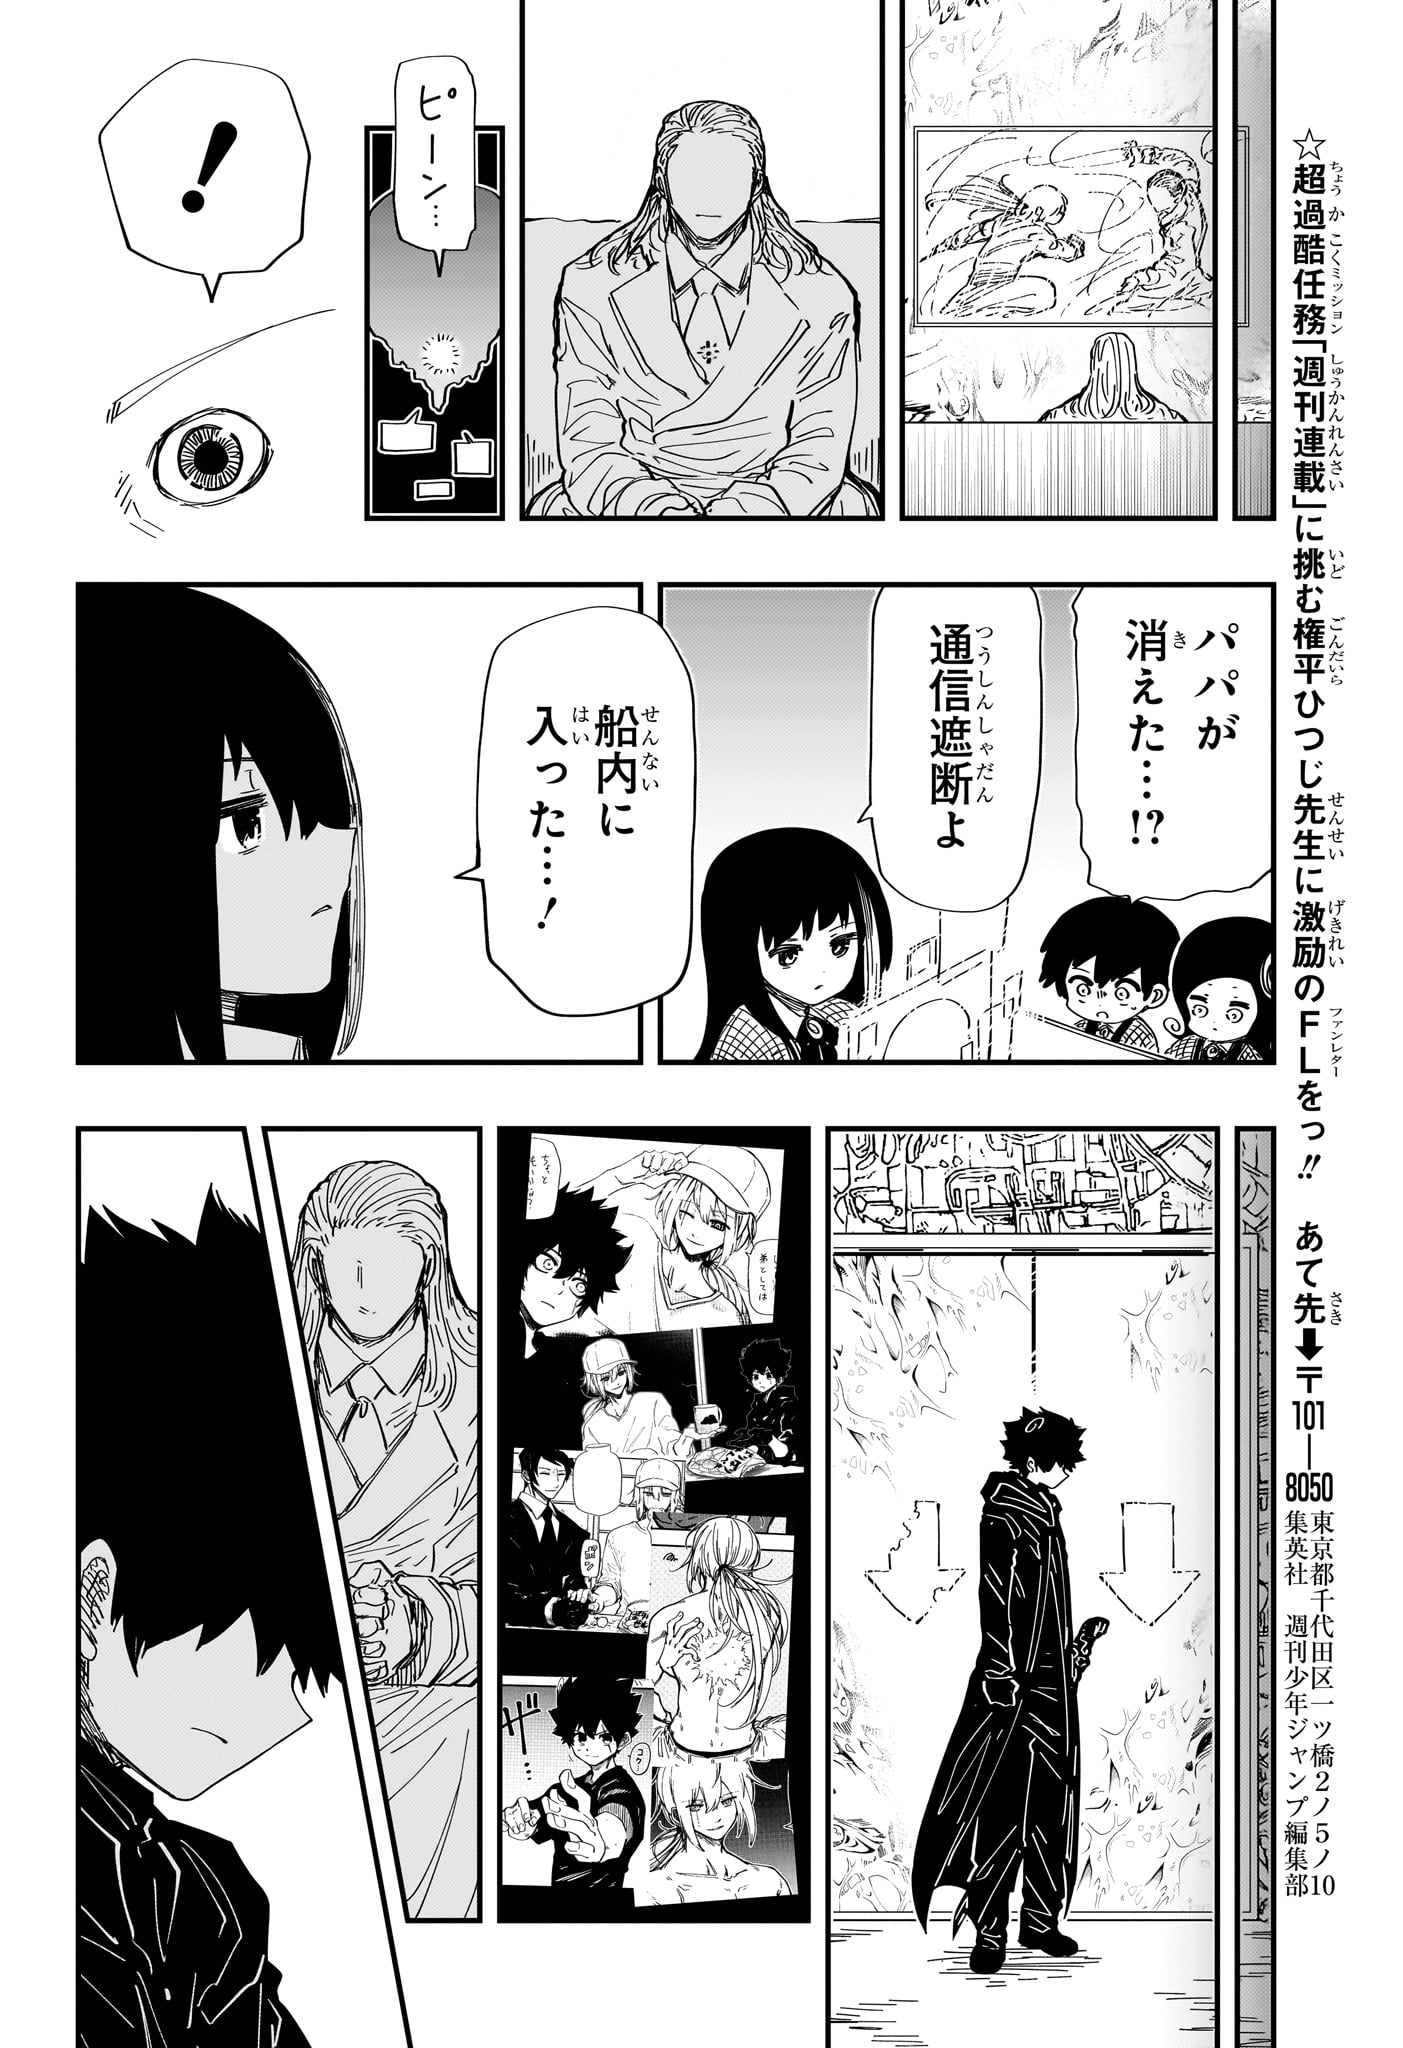 Yozakura-san Chi no Daisakusen - Chapter 228 - Page 18